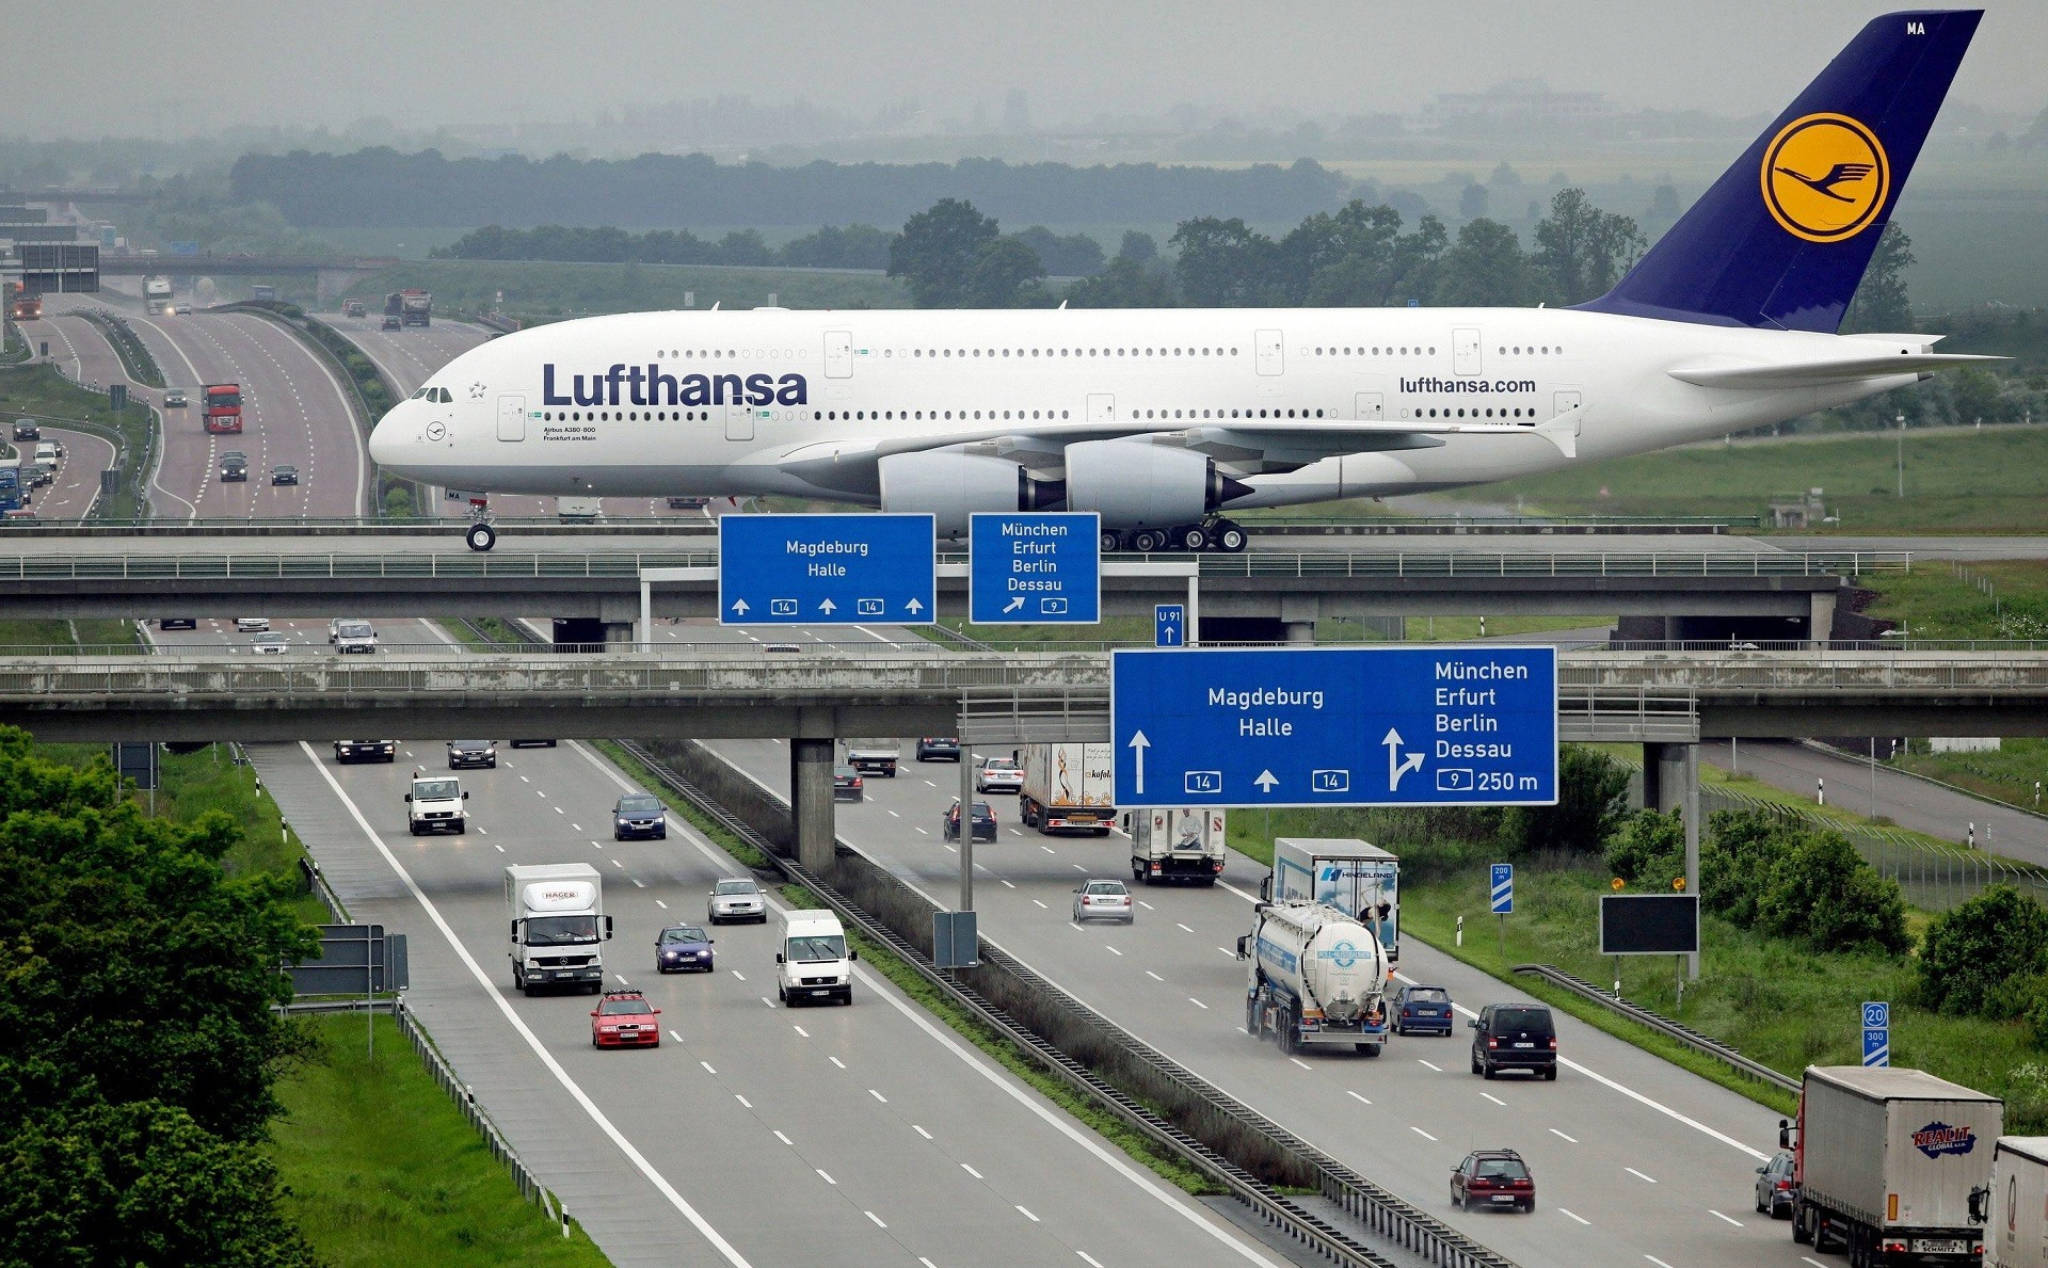 Airbus A380: Hãy chiêm ngưỡng hình ảnh thiết kế tuyệt đẹp của một trong những máy bay lớn nhất thế giới - Airbus A